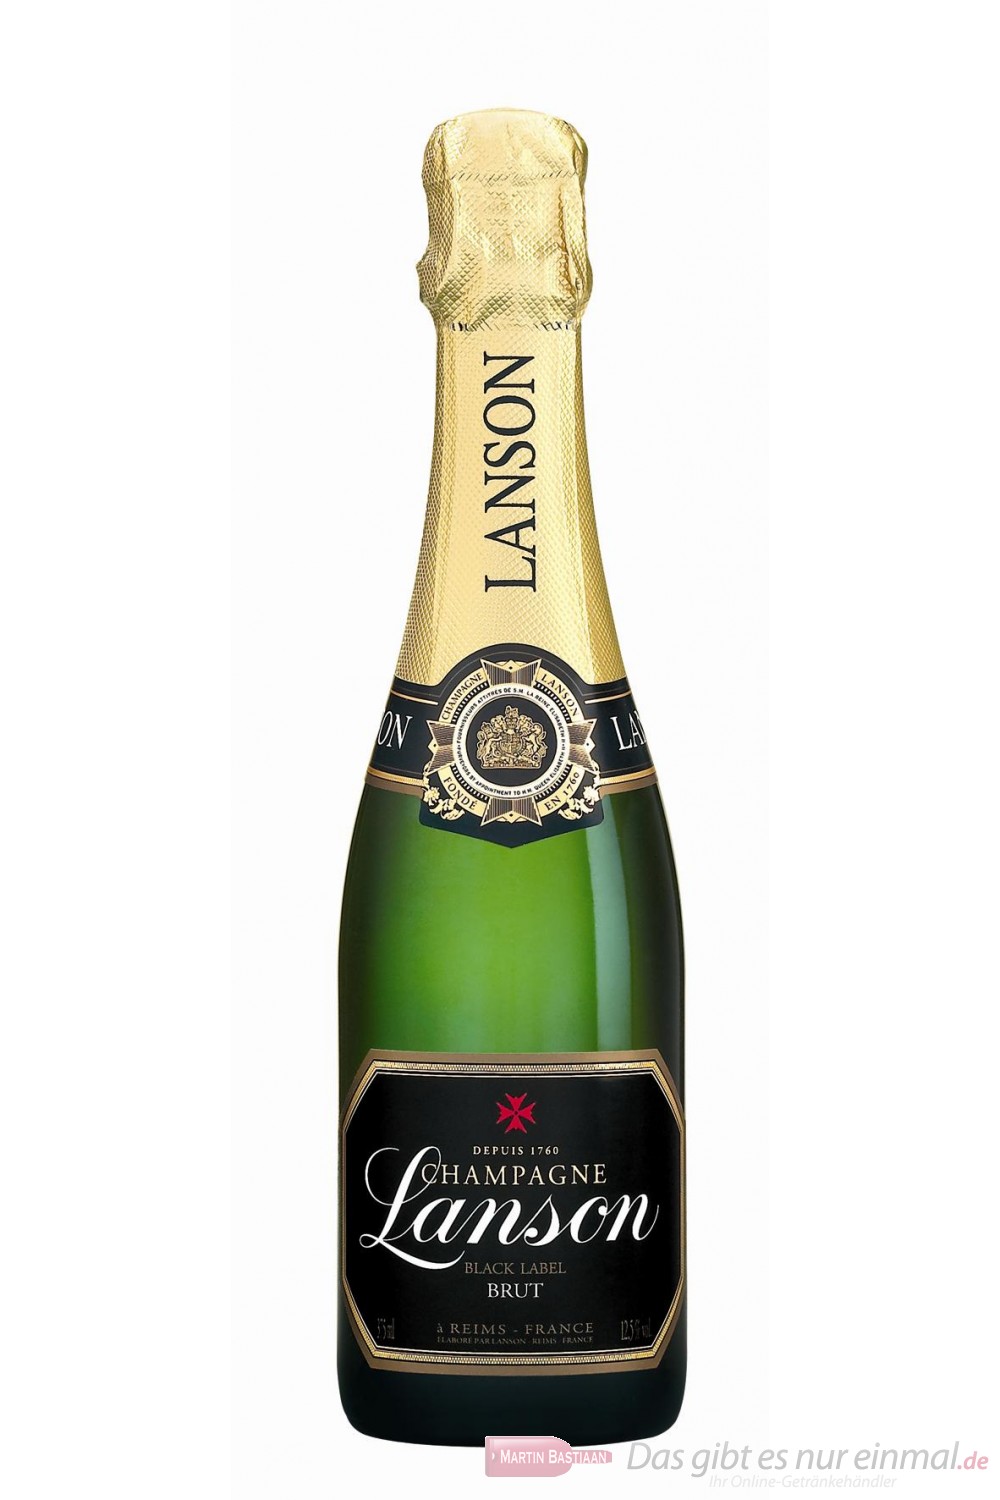 Lanson Champagner Black Label Brut 12% 0,375l Flasche